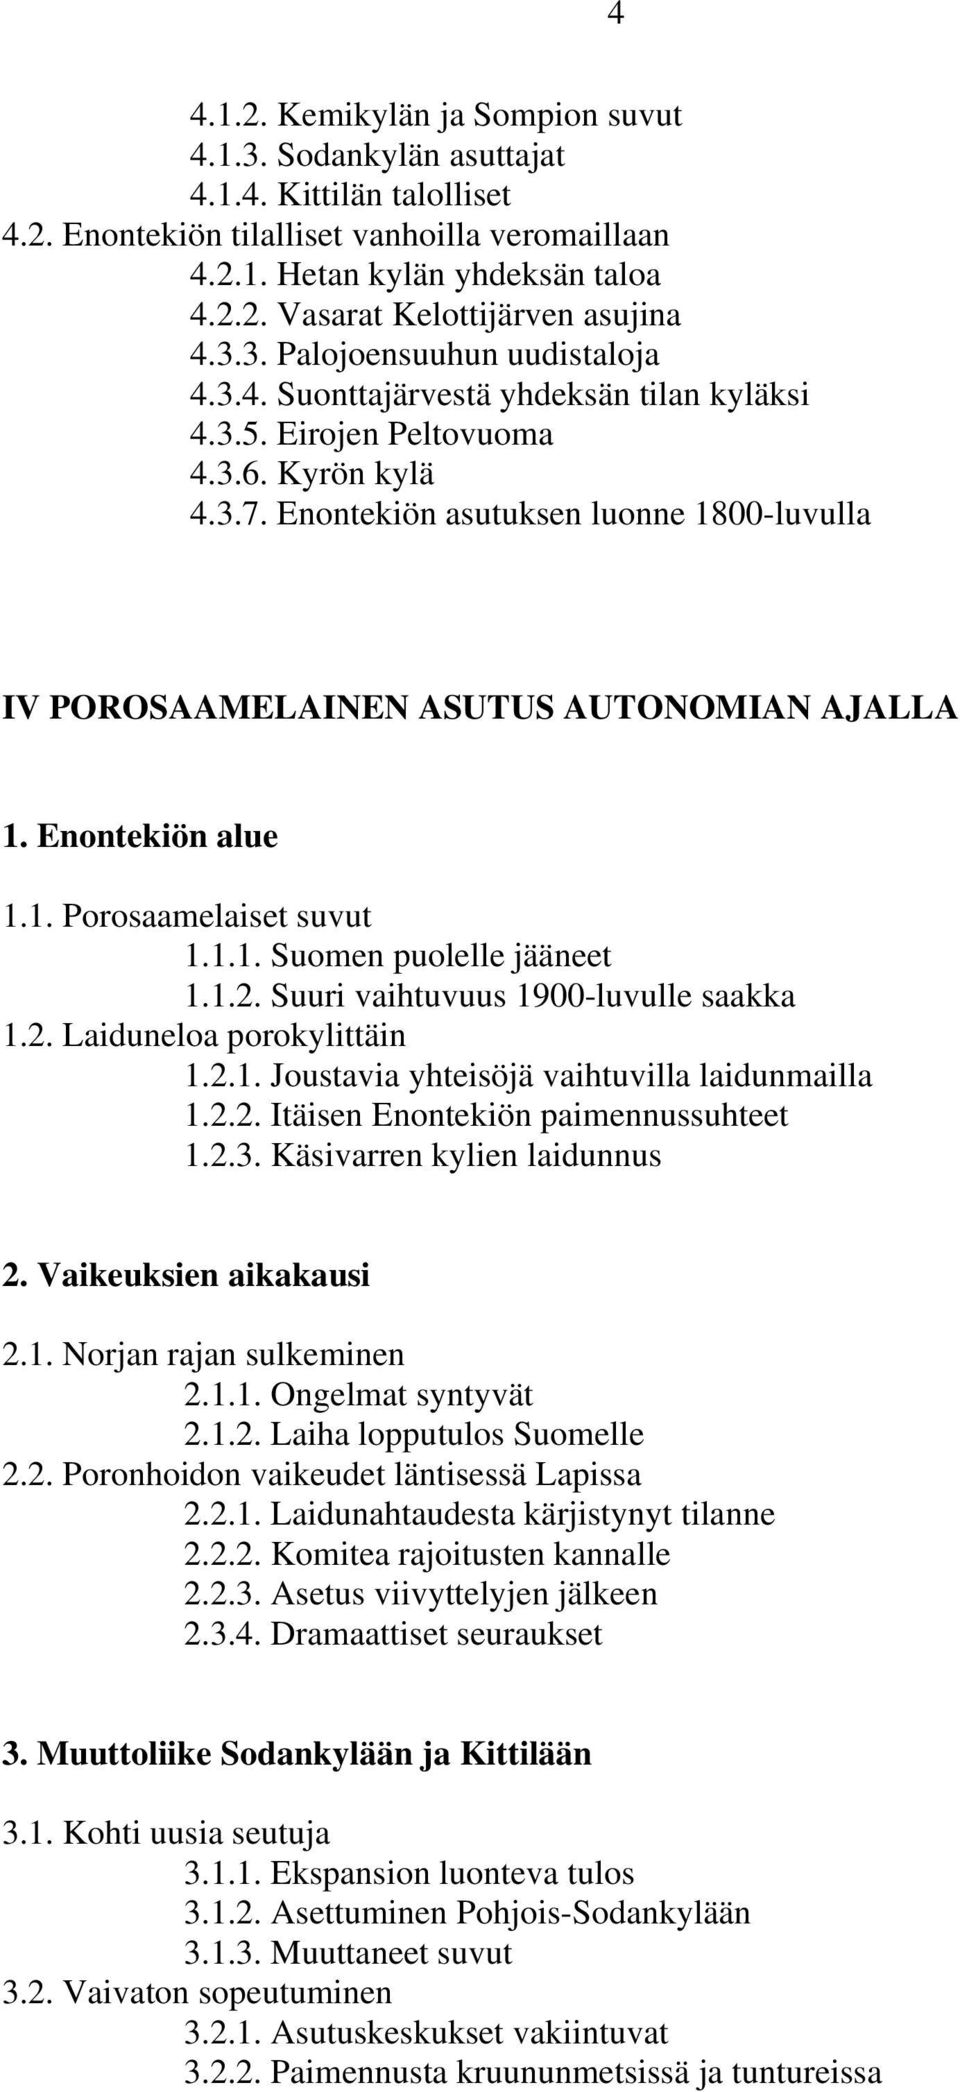 Enontekiön asutuksen luonne 1800-luvulla IV POROSAAMELAINEN ASUTUS AUTONOMIAN AJALLA 1. Enontekiön alue 1.1. Porosaamelaiset suvut 1.1.1. Suomen puolelle jääneet 1.1.2.